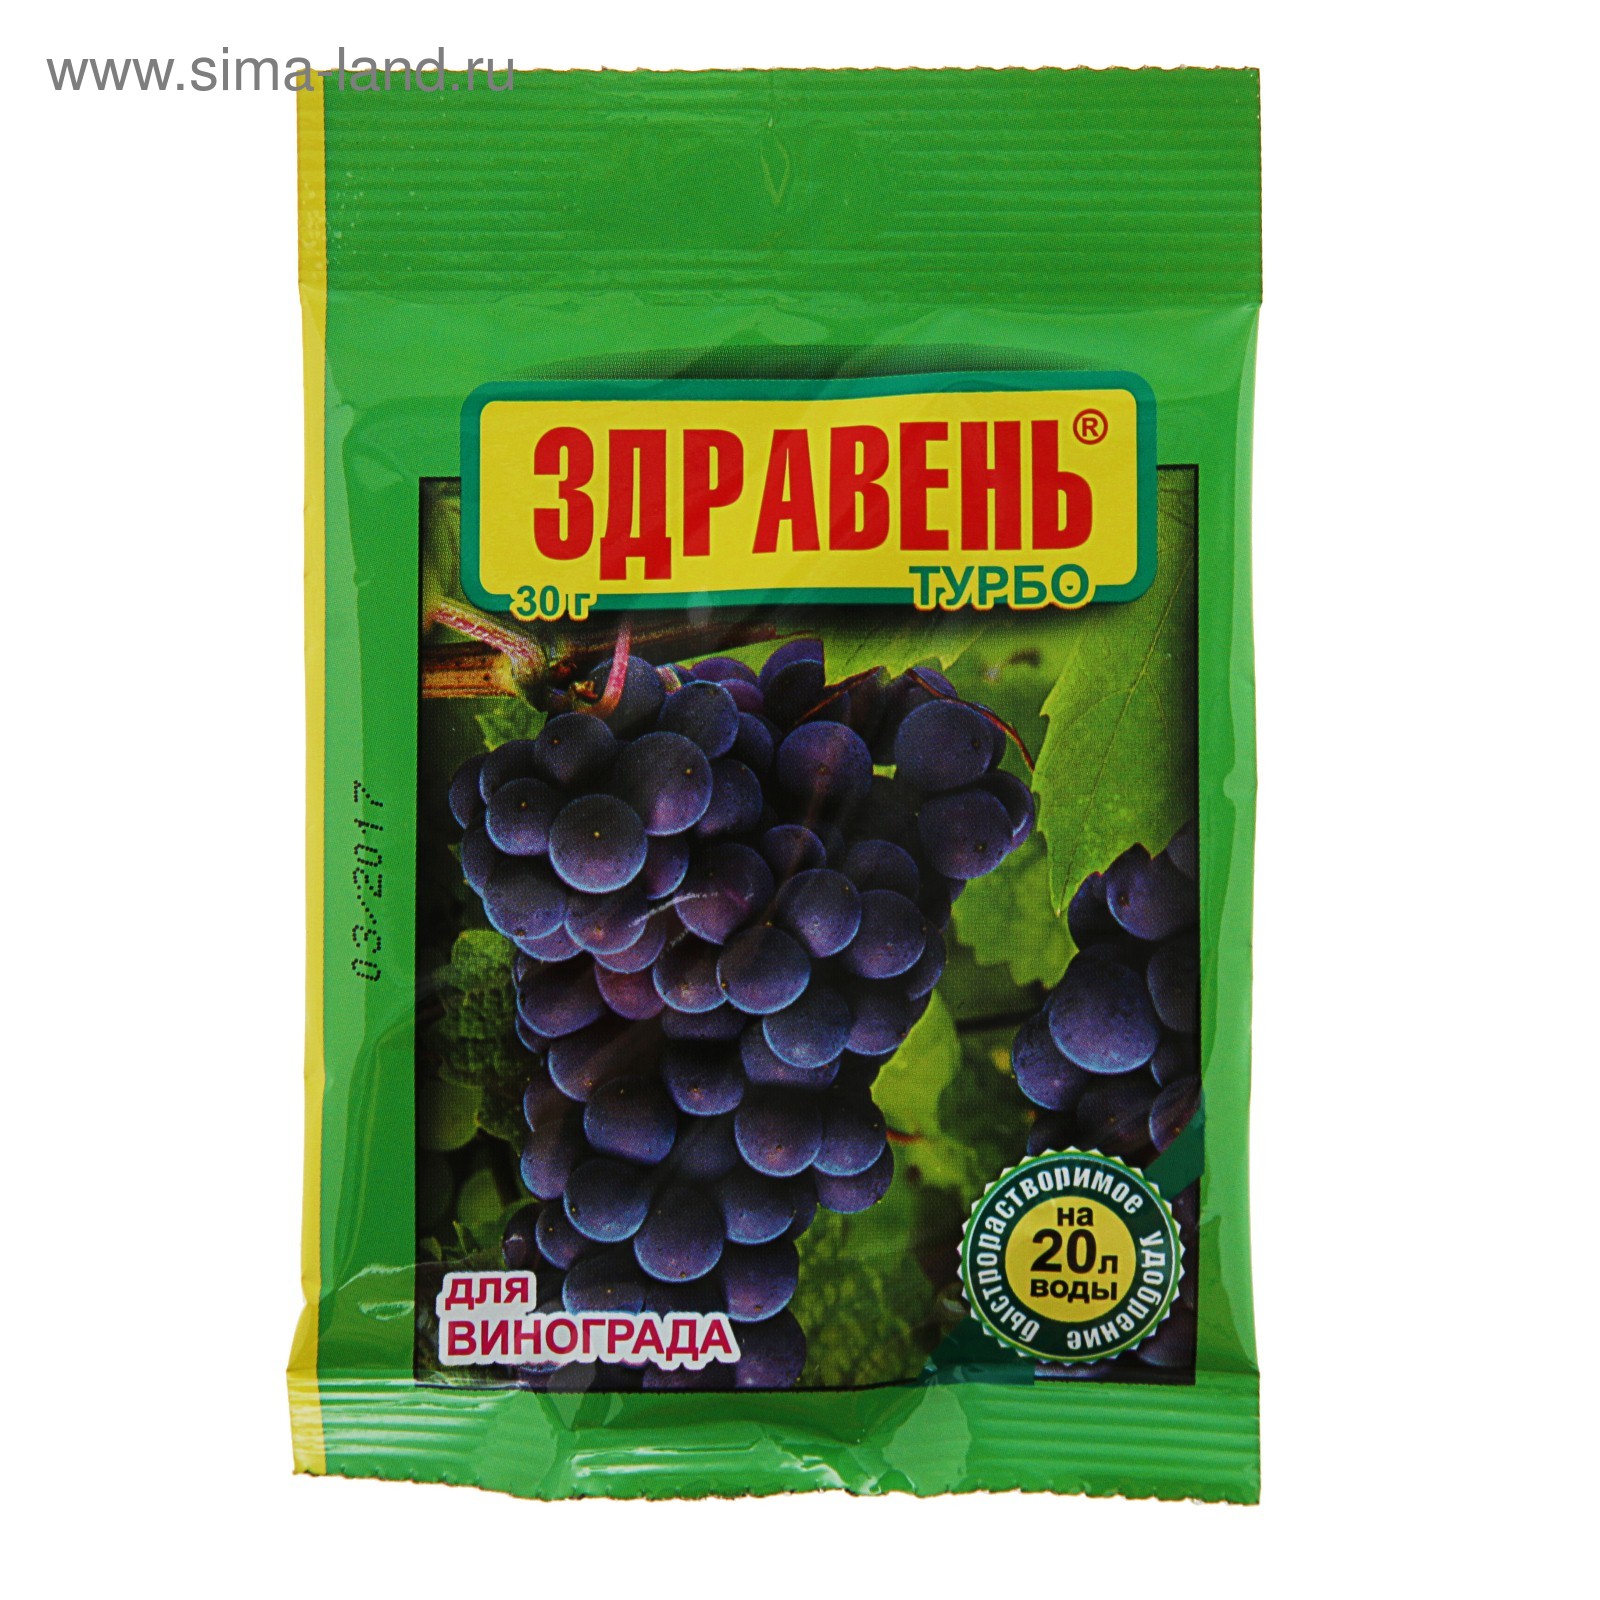 Какой состав имеет удобрение Здравень Турбо для винограда?